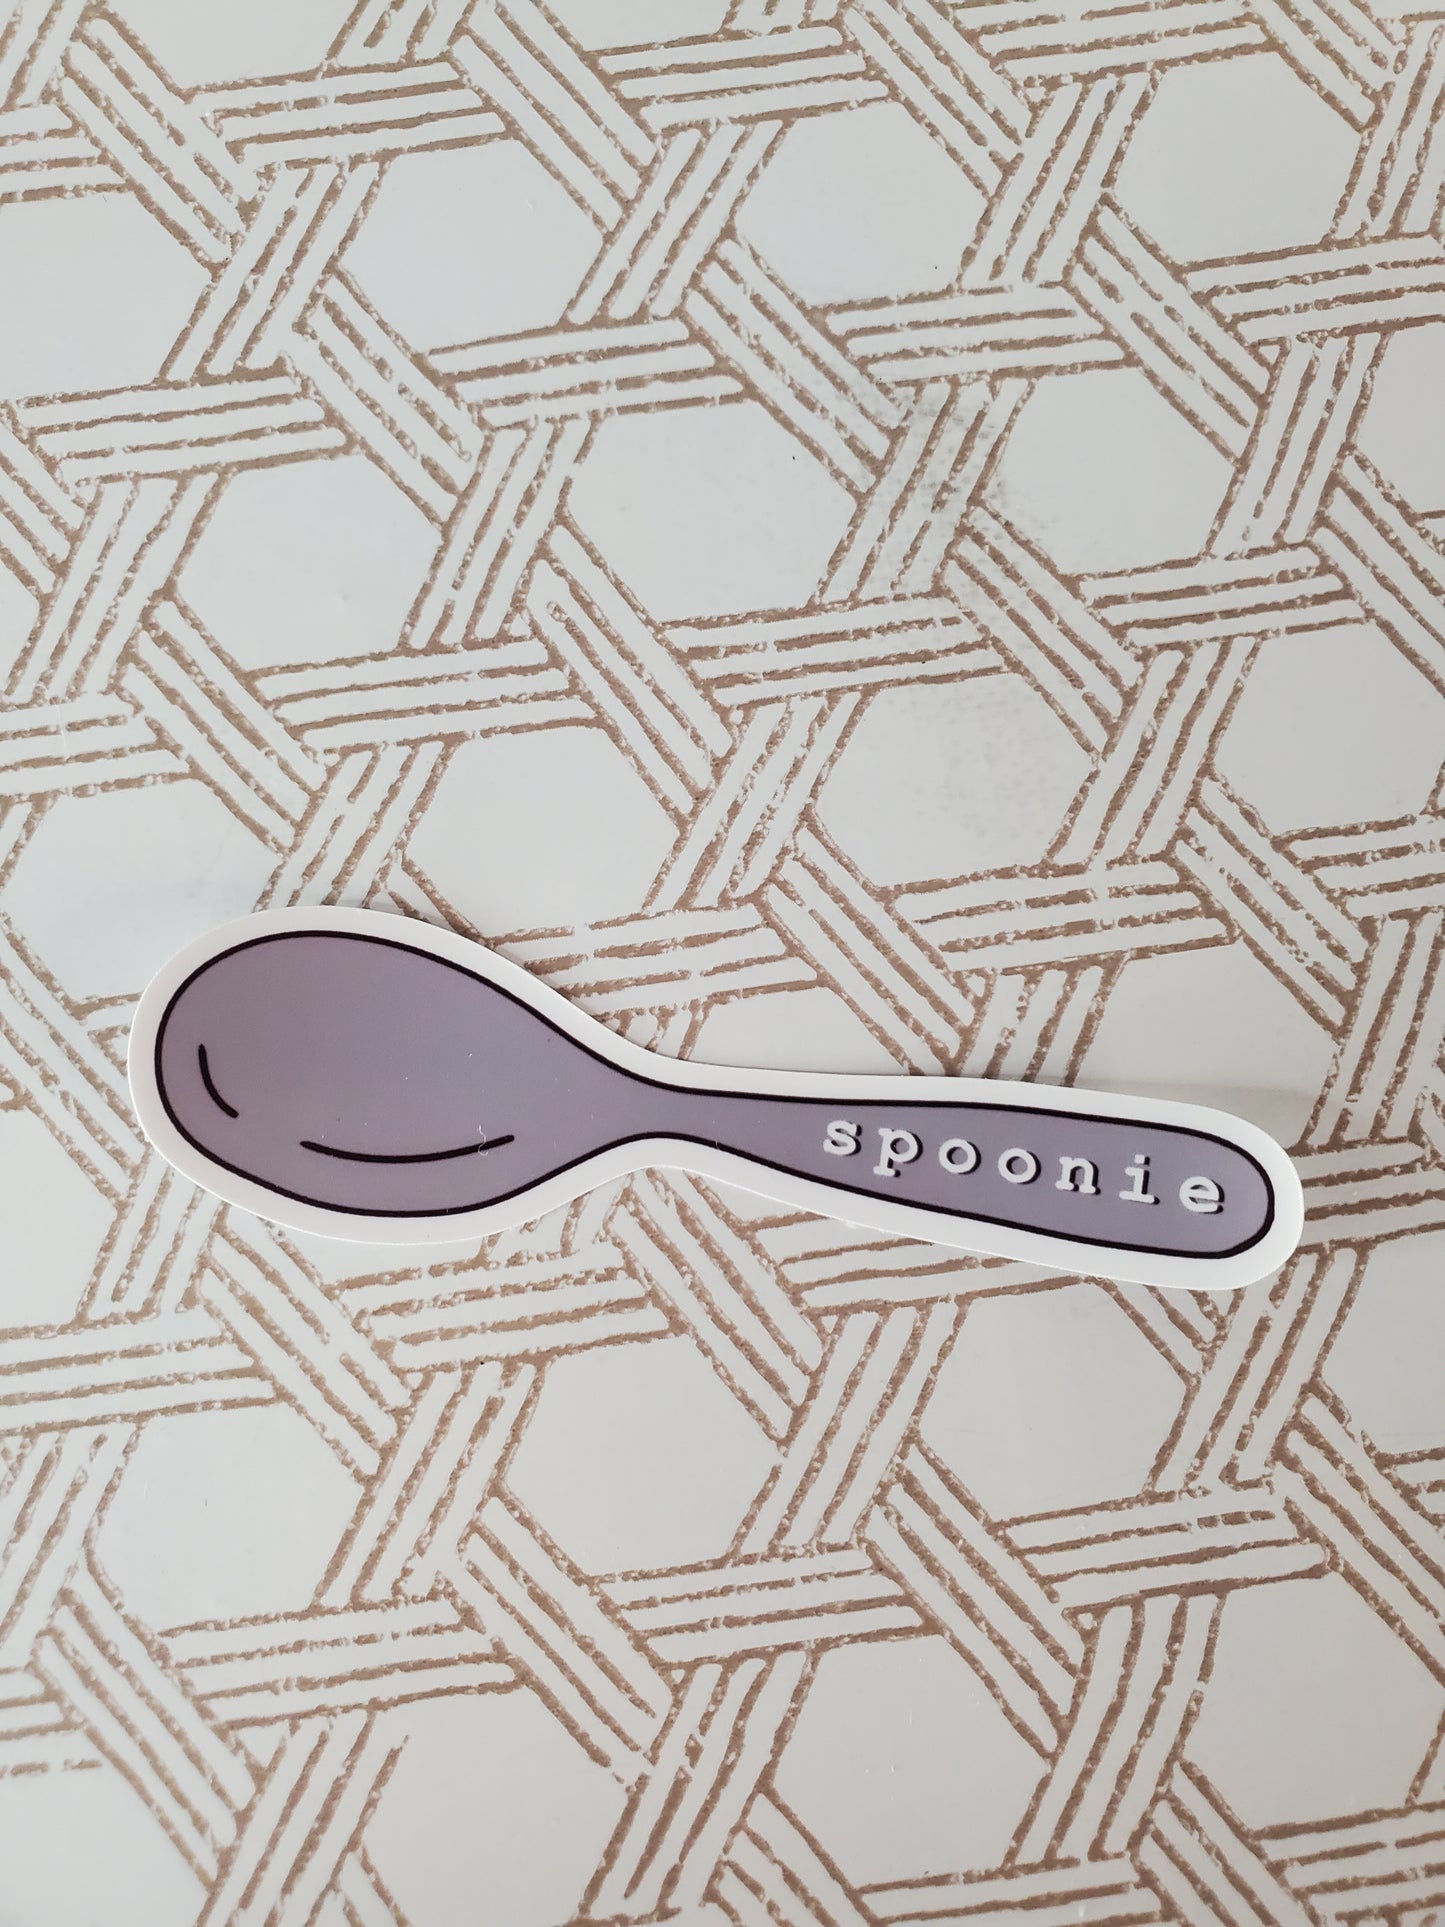 Spoonie Sticker - Spoon Theory Sticker - Spoon Sticker - Chronic Illness Sticker